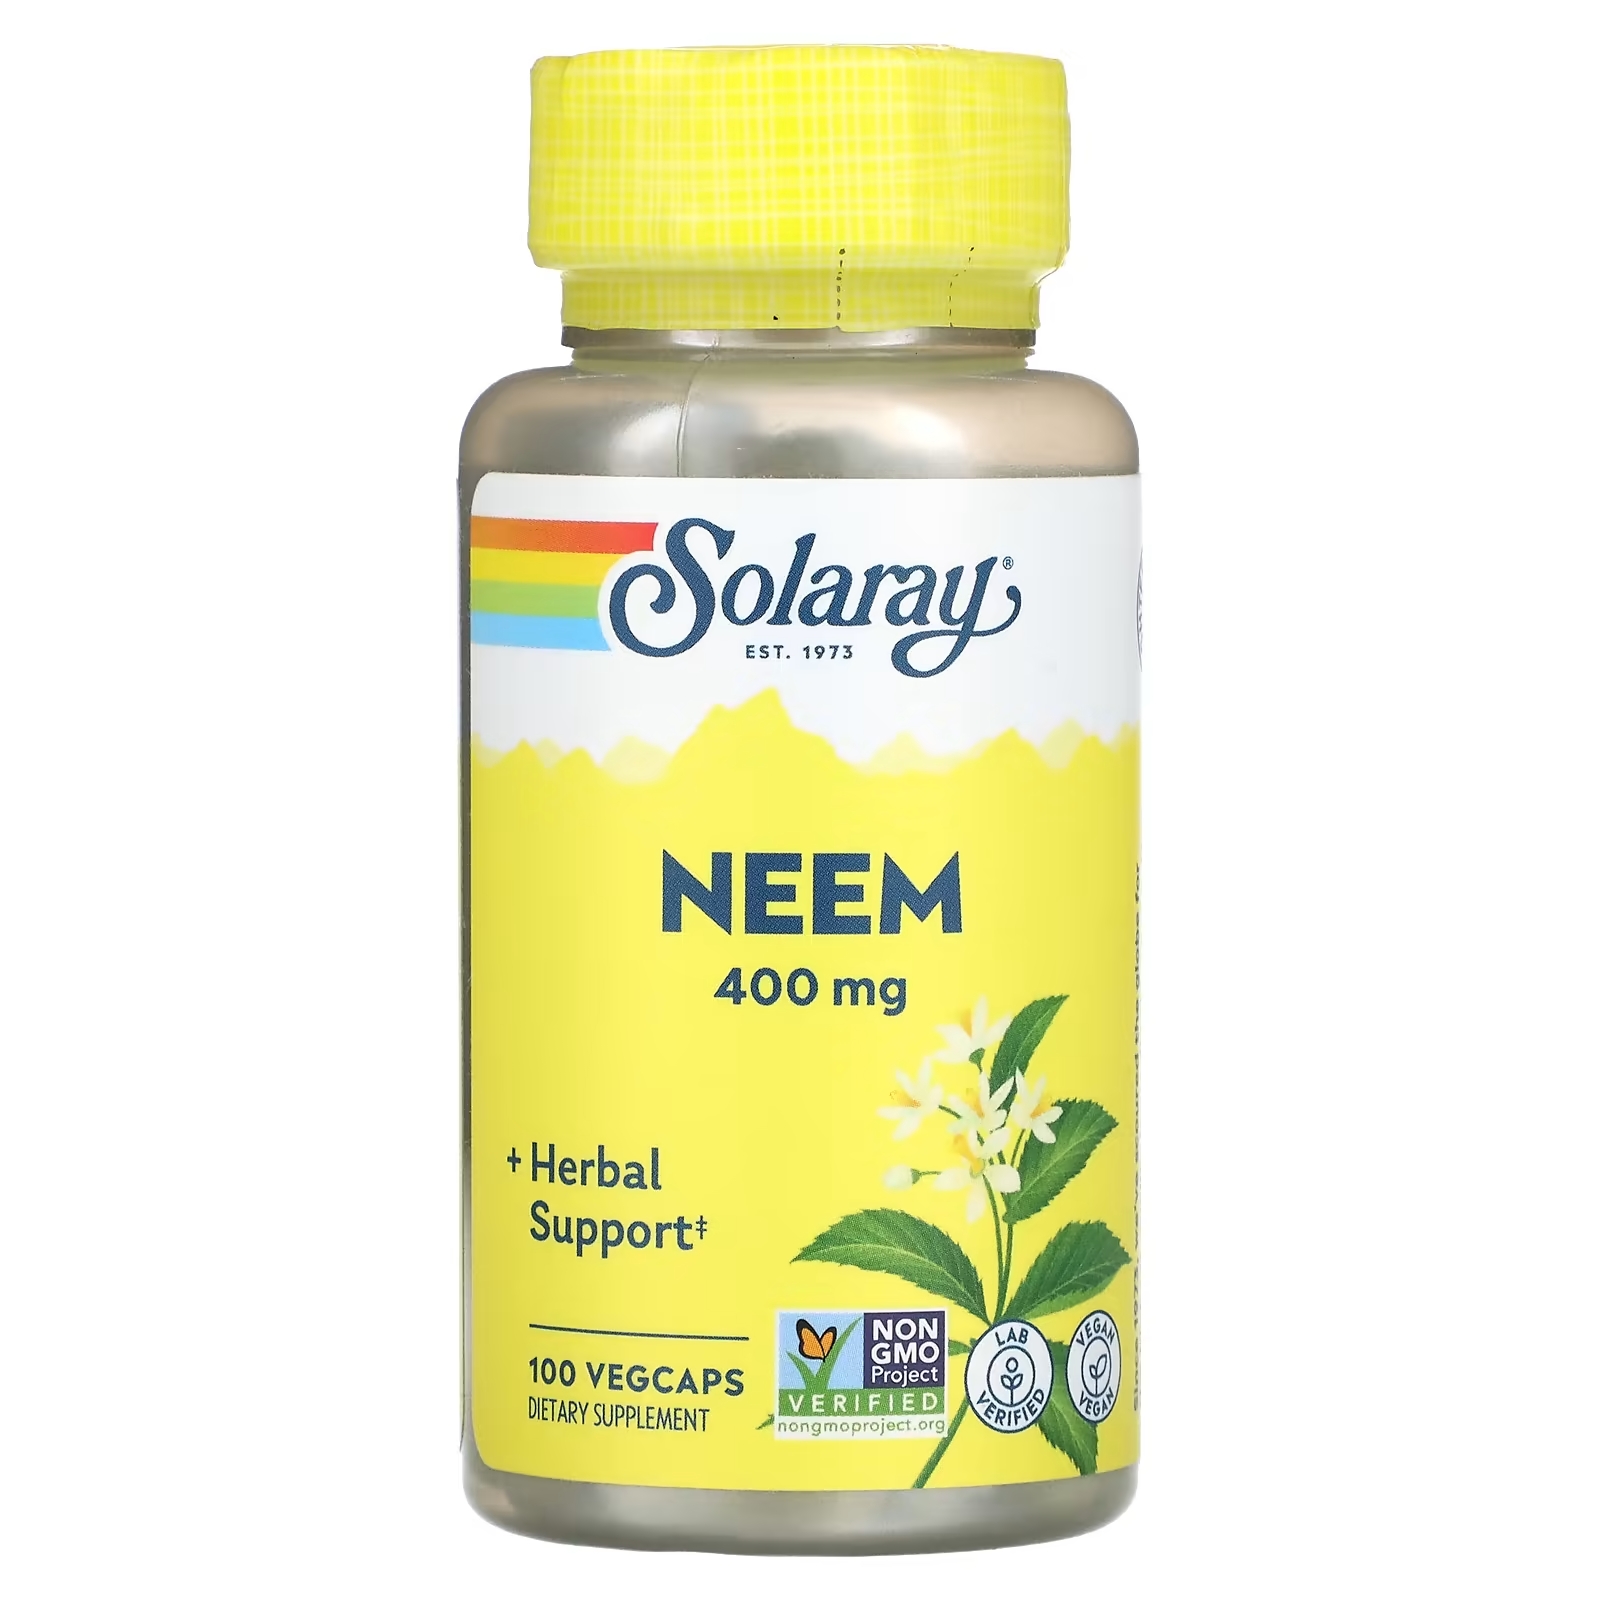 Solaray Органически выращенный ниим 400 мг, 100 вегетарианских капсул